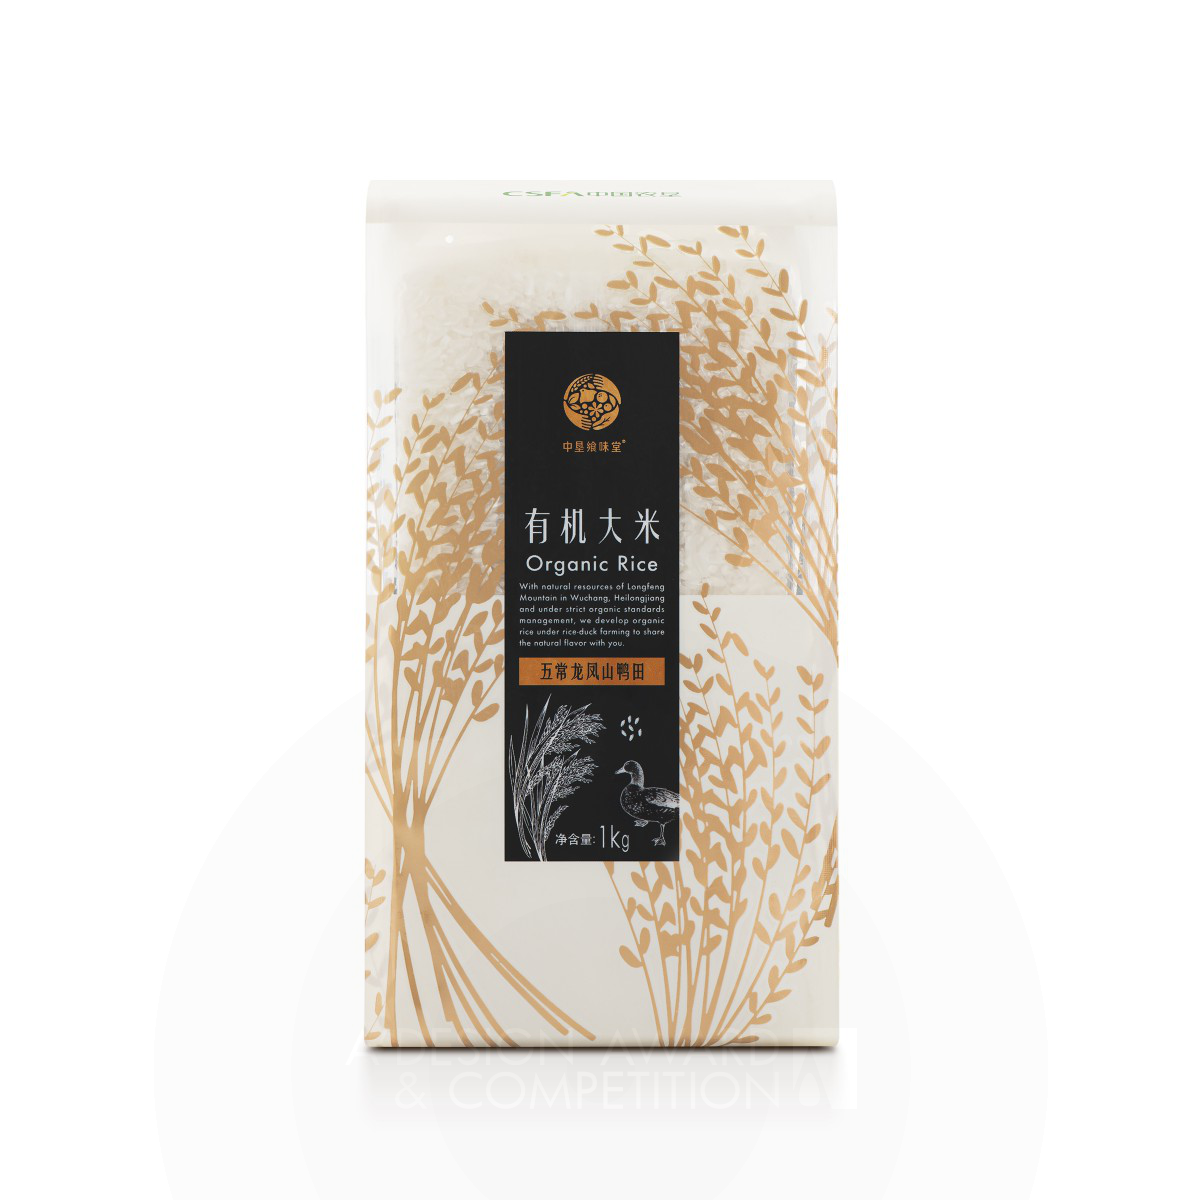 Kazuo Fukushima wins Silver at the prestigious A' Packaging Design Award with Organic Rice Bag.